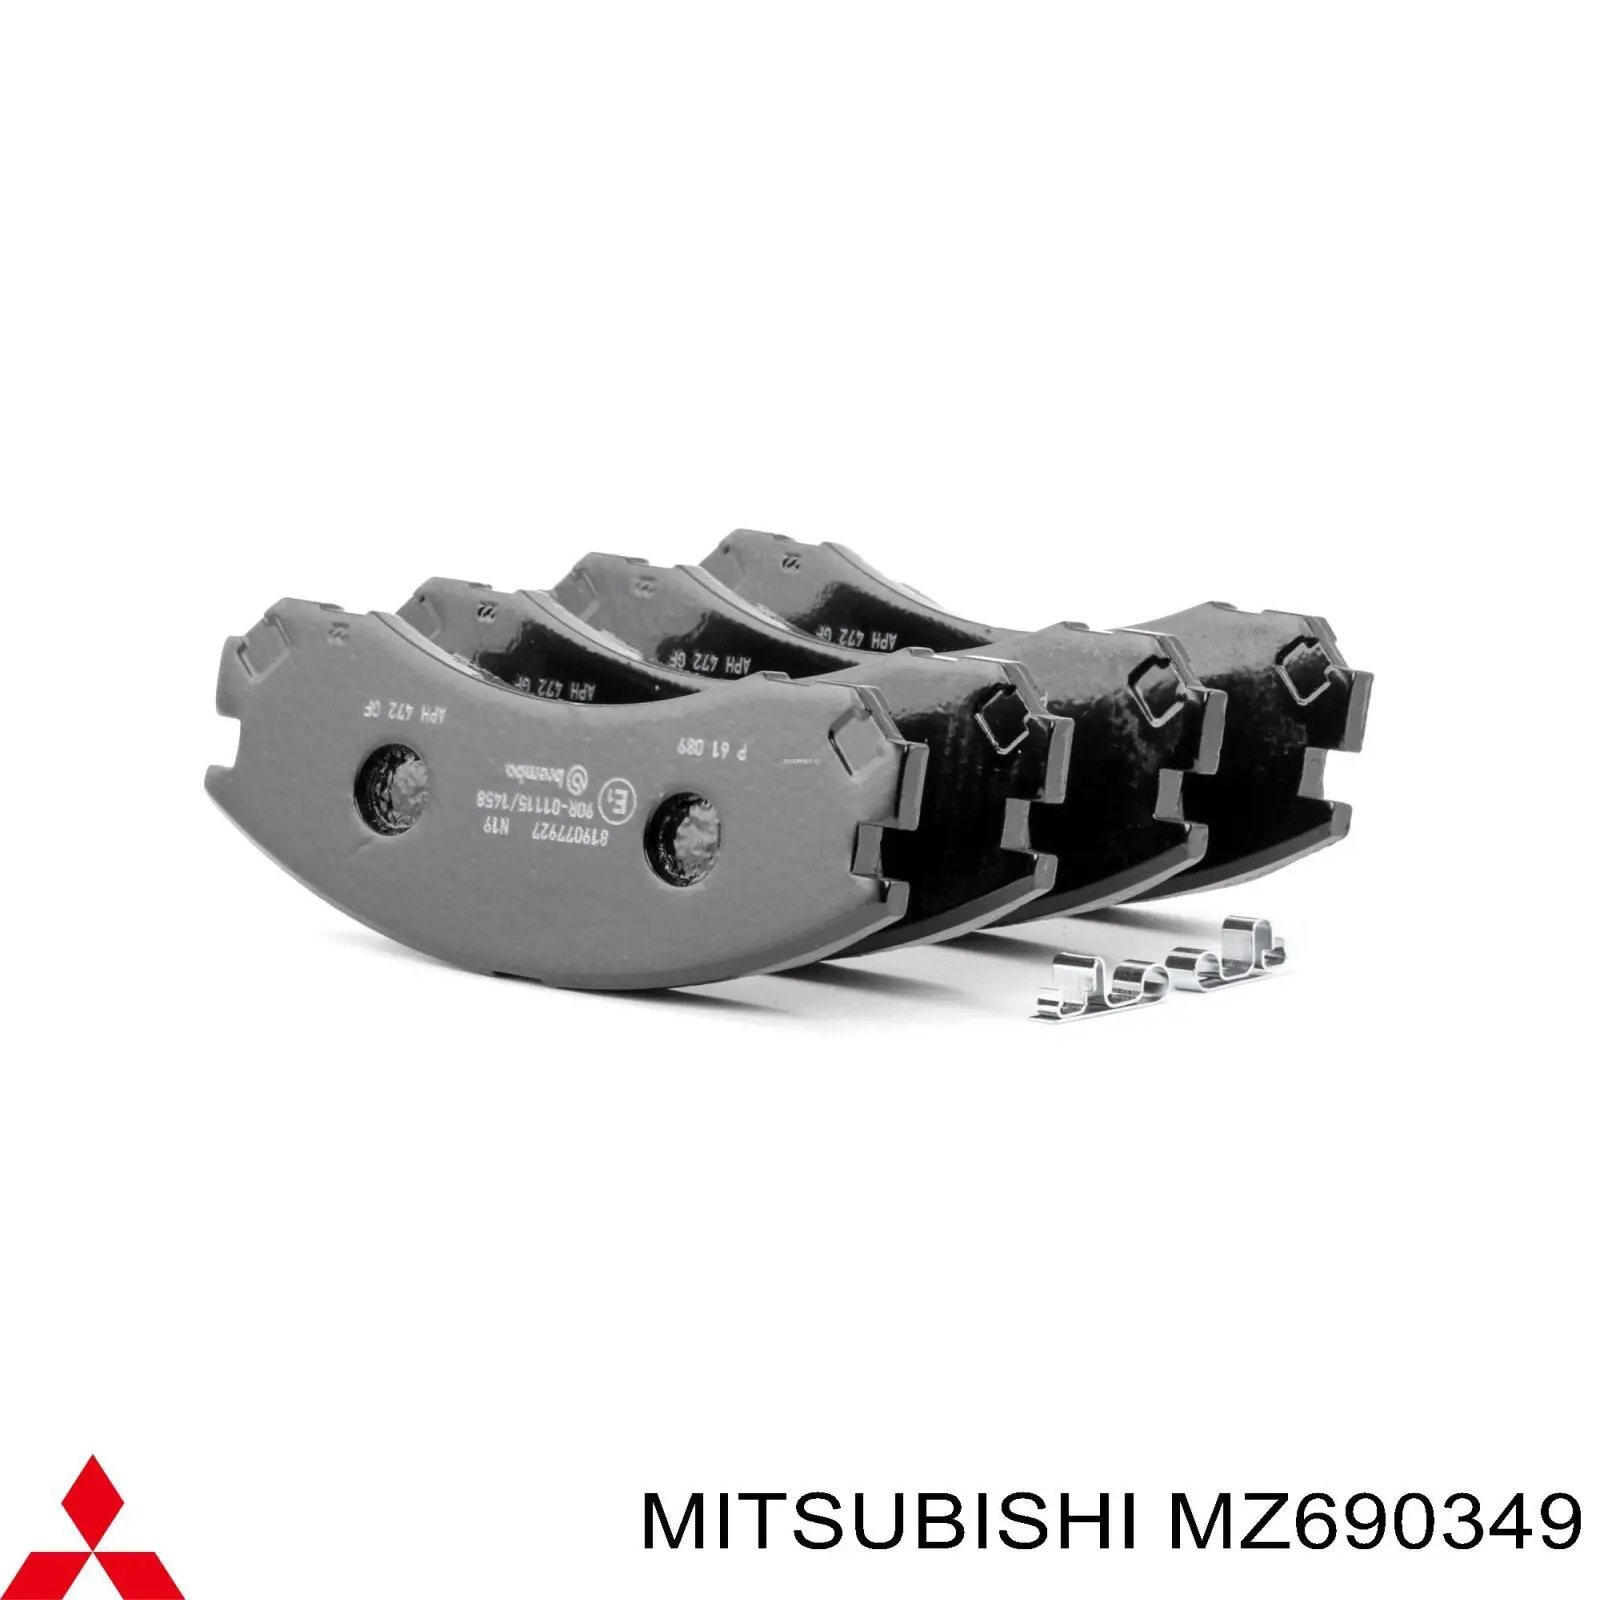 MZ690349 Mitsubishi pastillas de freno delanteras